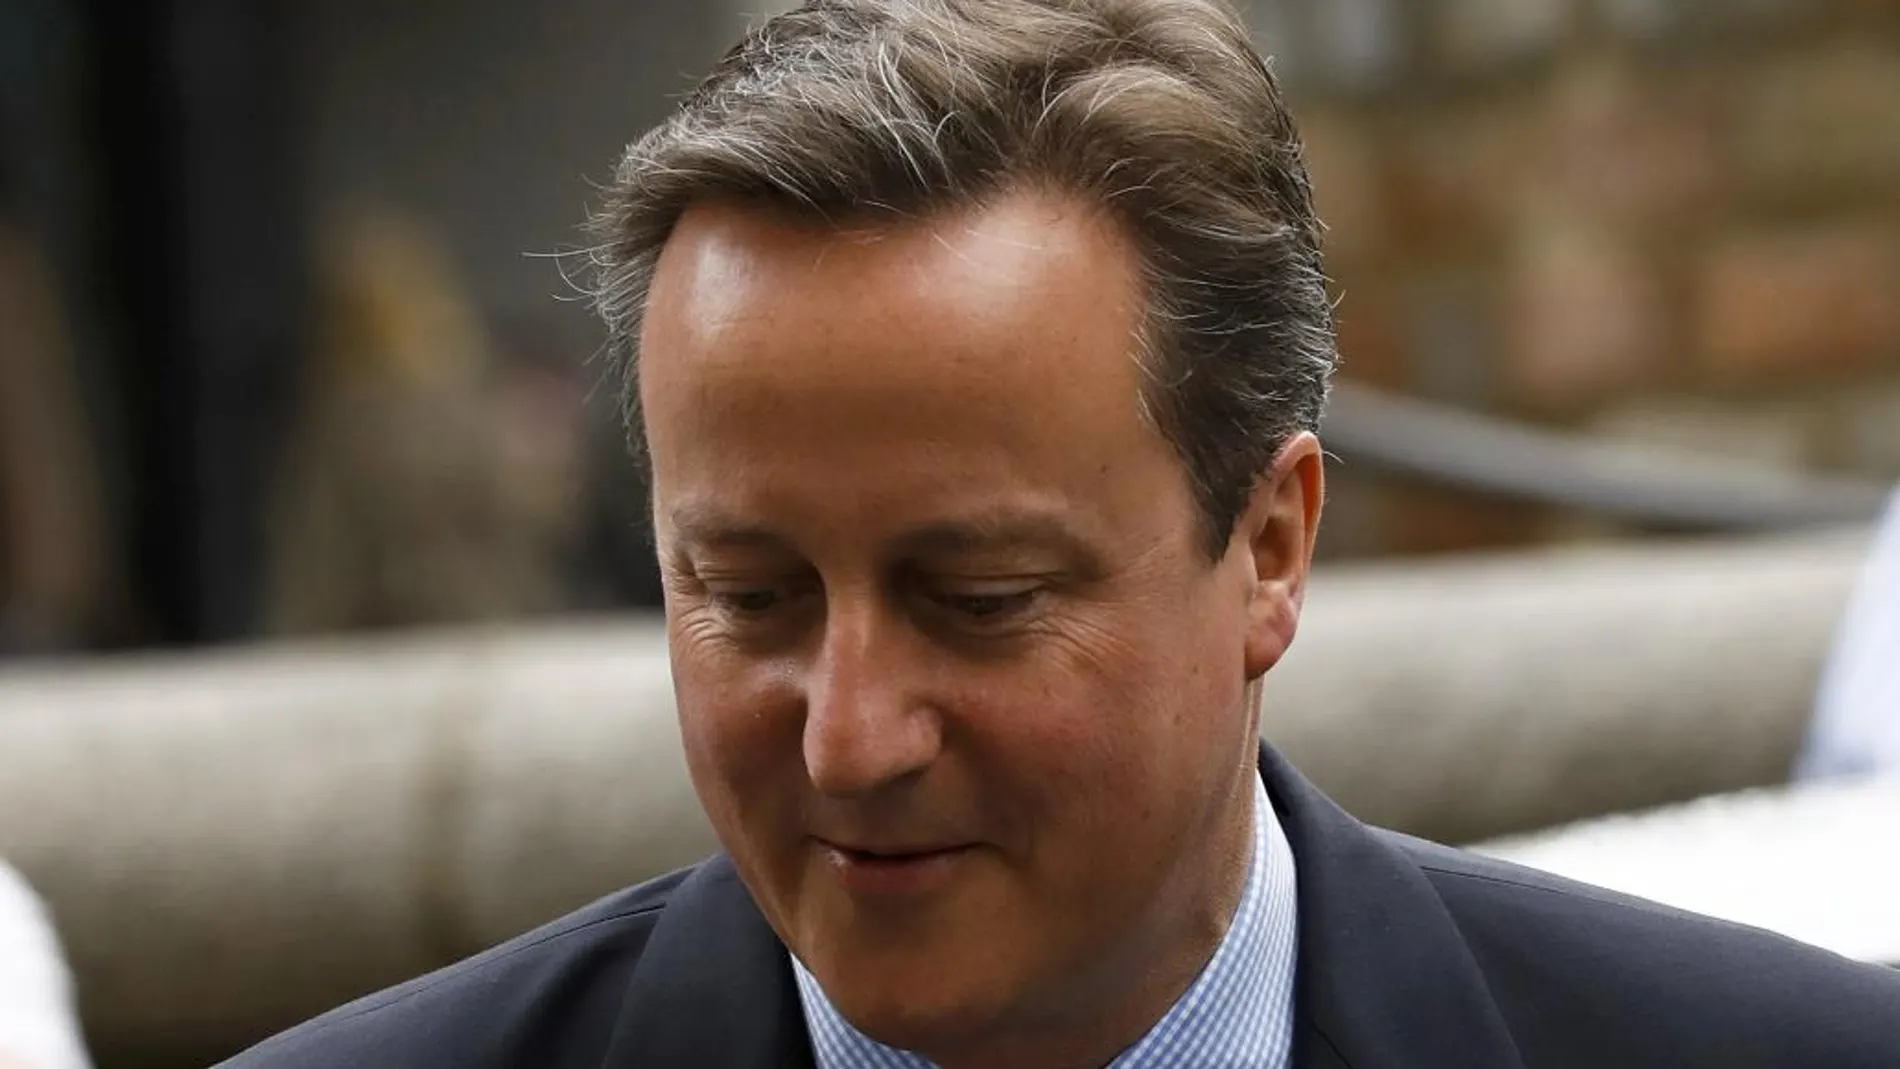 El primer minisrtro, David Cameron